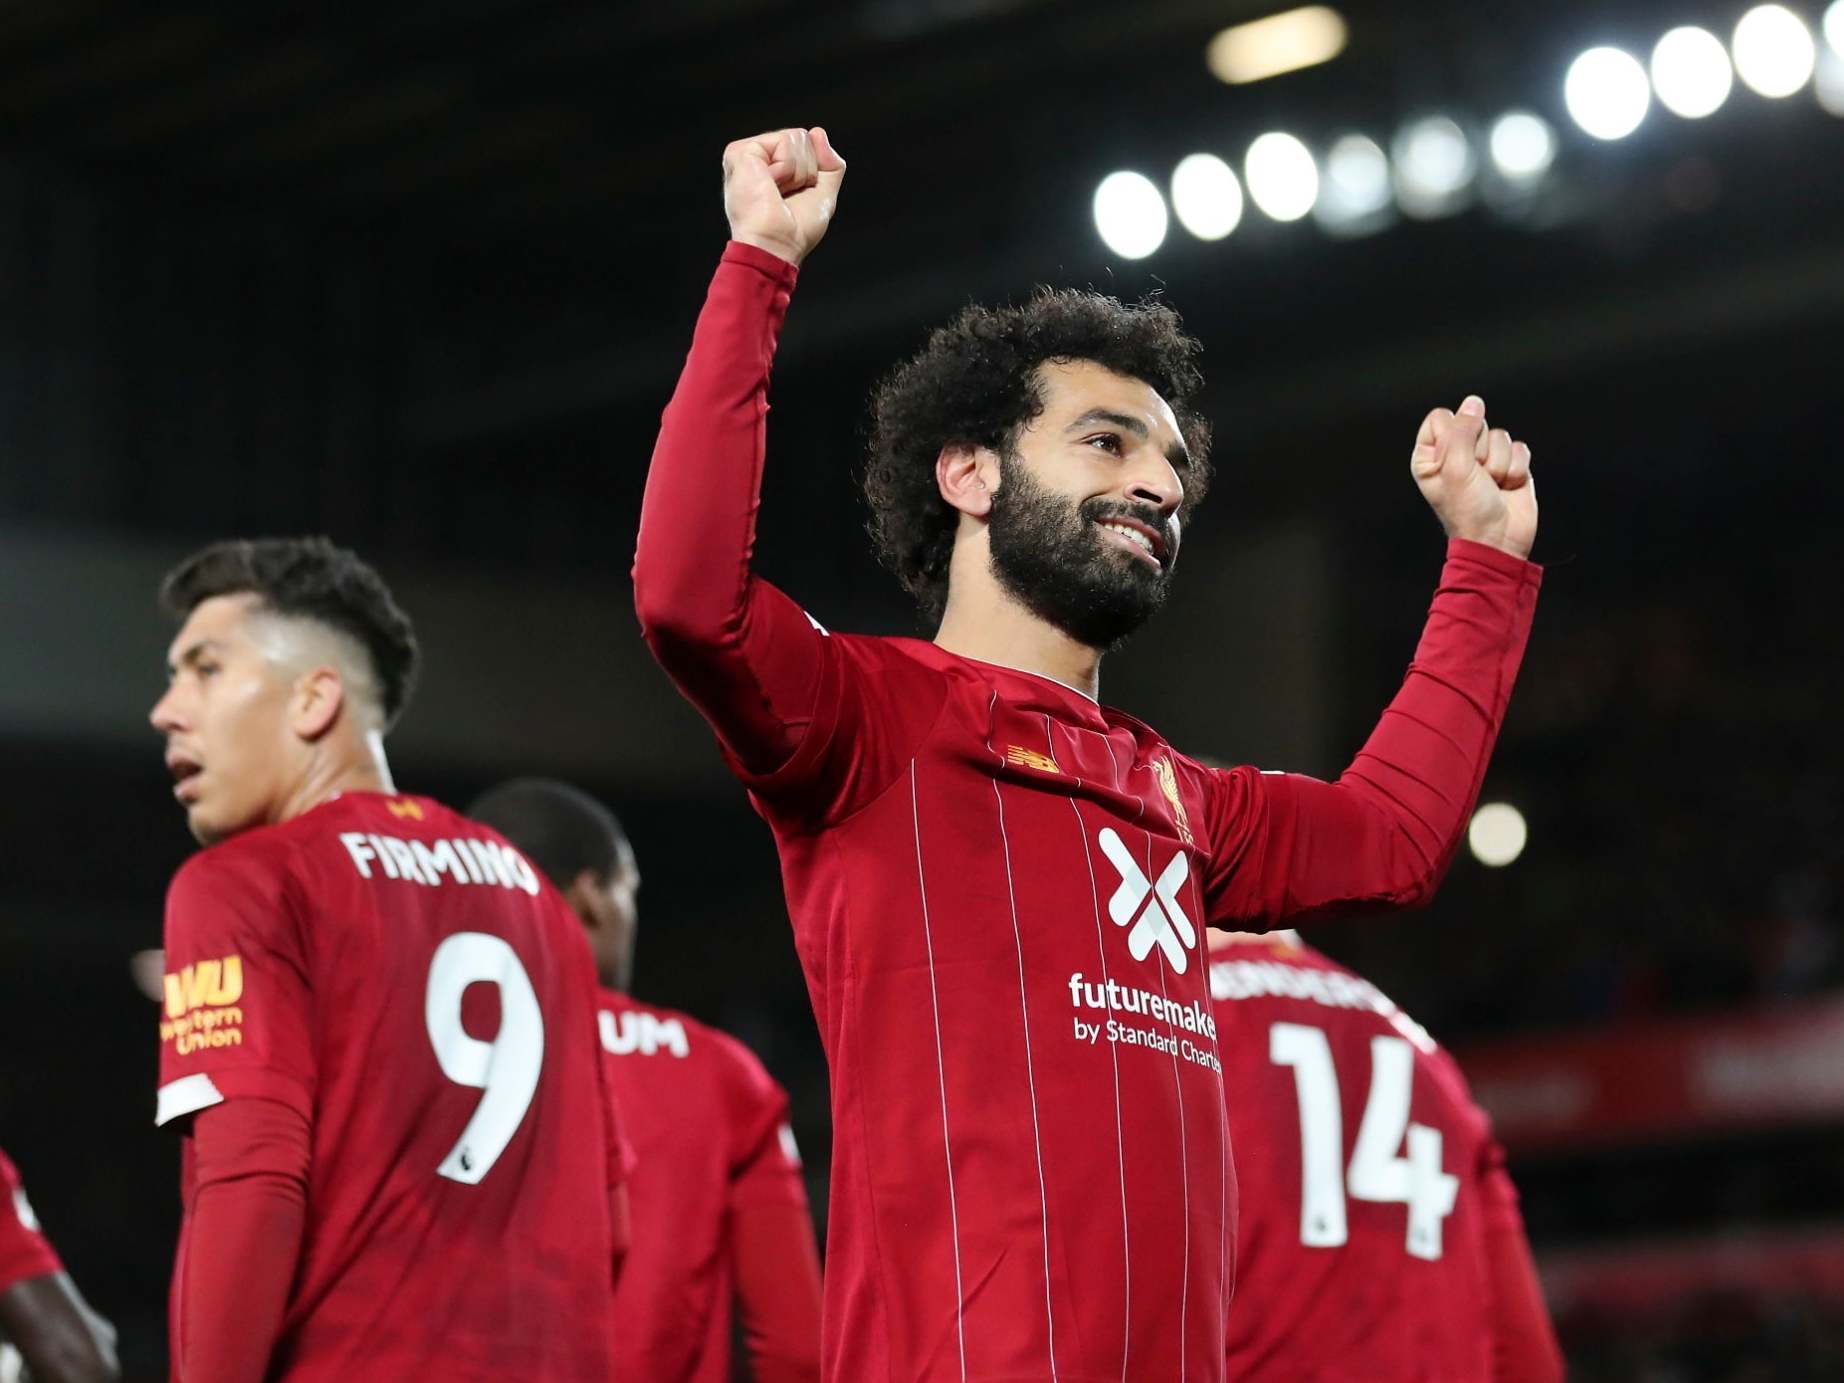 Liverpool's Mohamed Salah celebrates after scoring